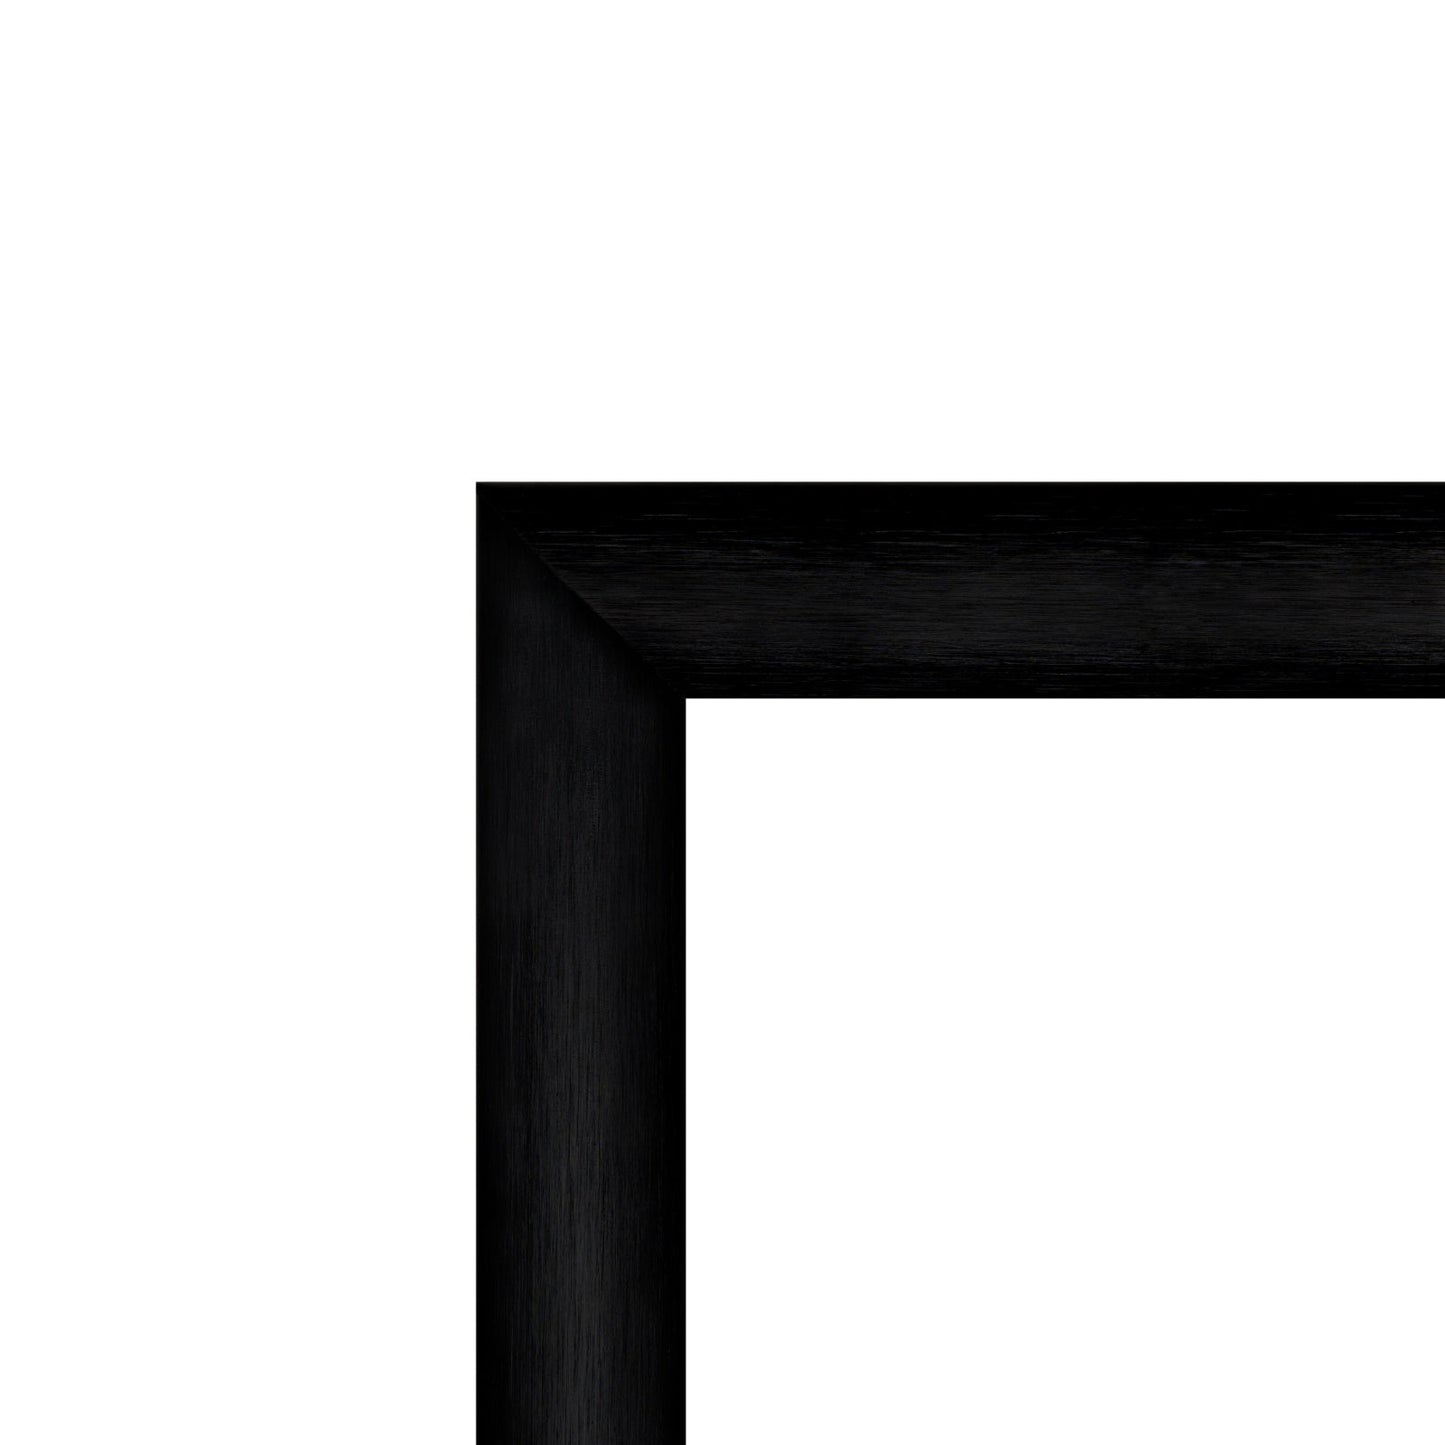 24x36 Brushed Black SnapeZo® Snap Frame - 1" Profile